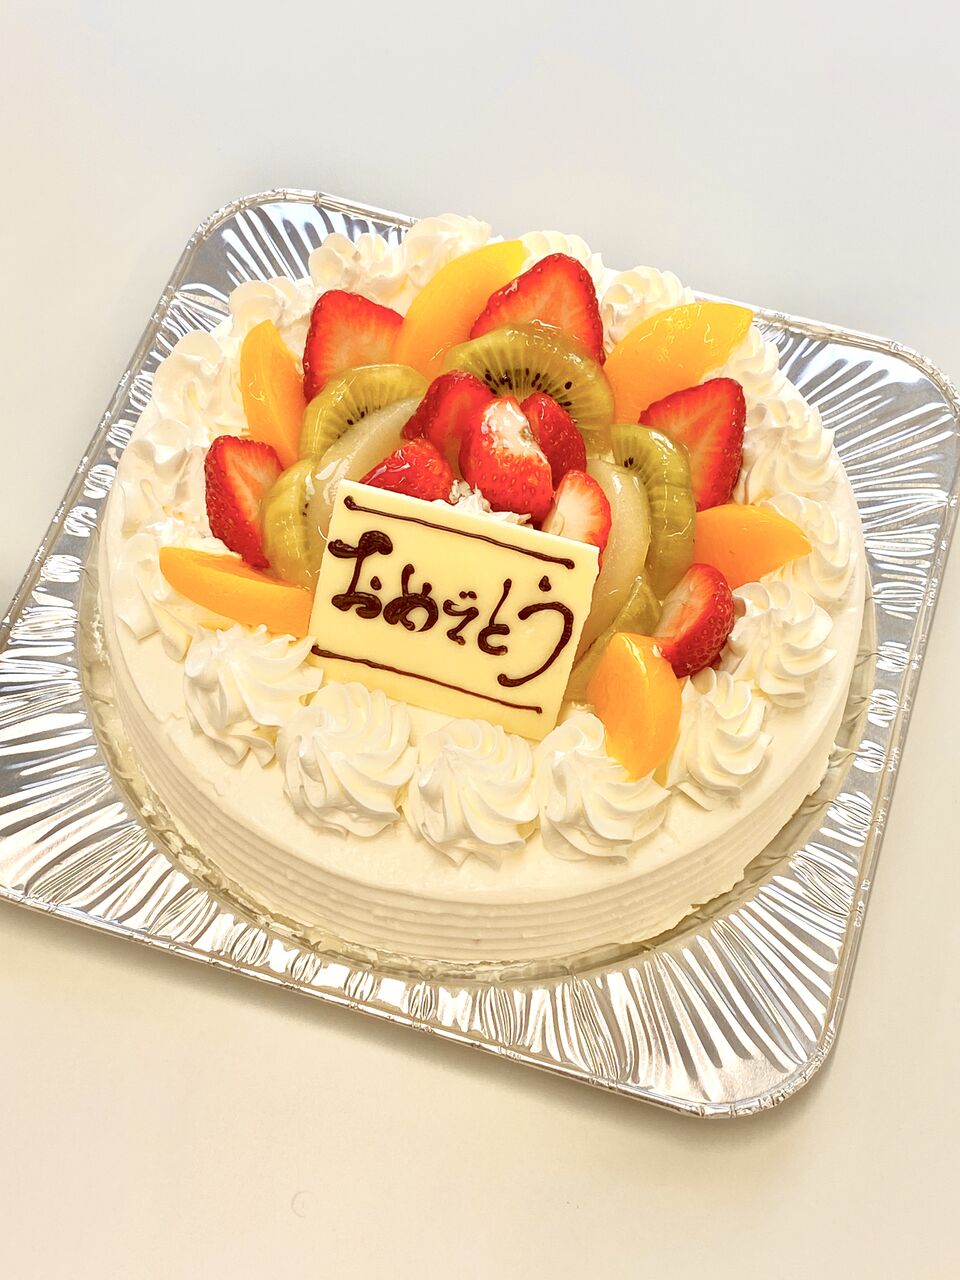 釧路の味と香りの洋菓子クランツ アレルギー対応ケーキ販売中 釧路のビジネスを応援するk Biz ケービズ スタッフブログ